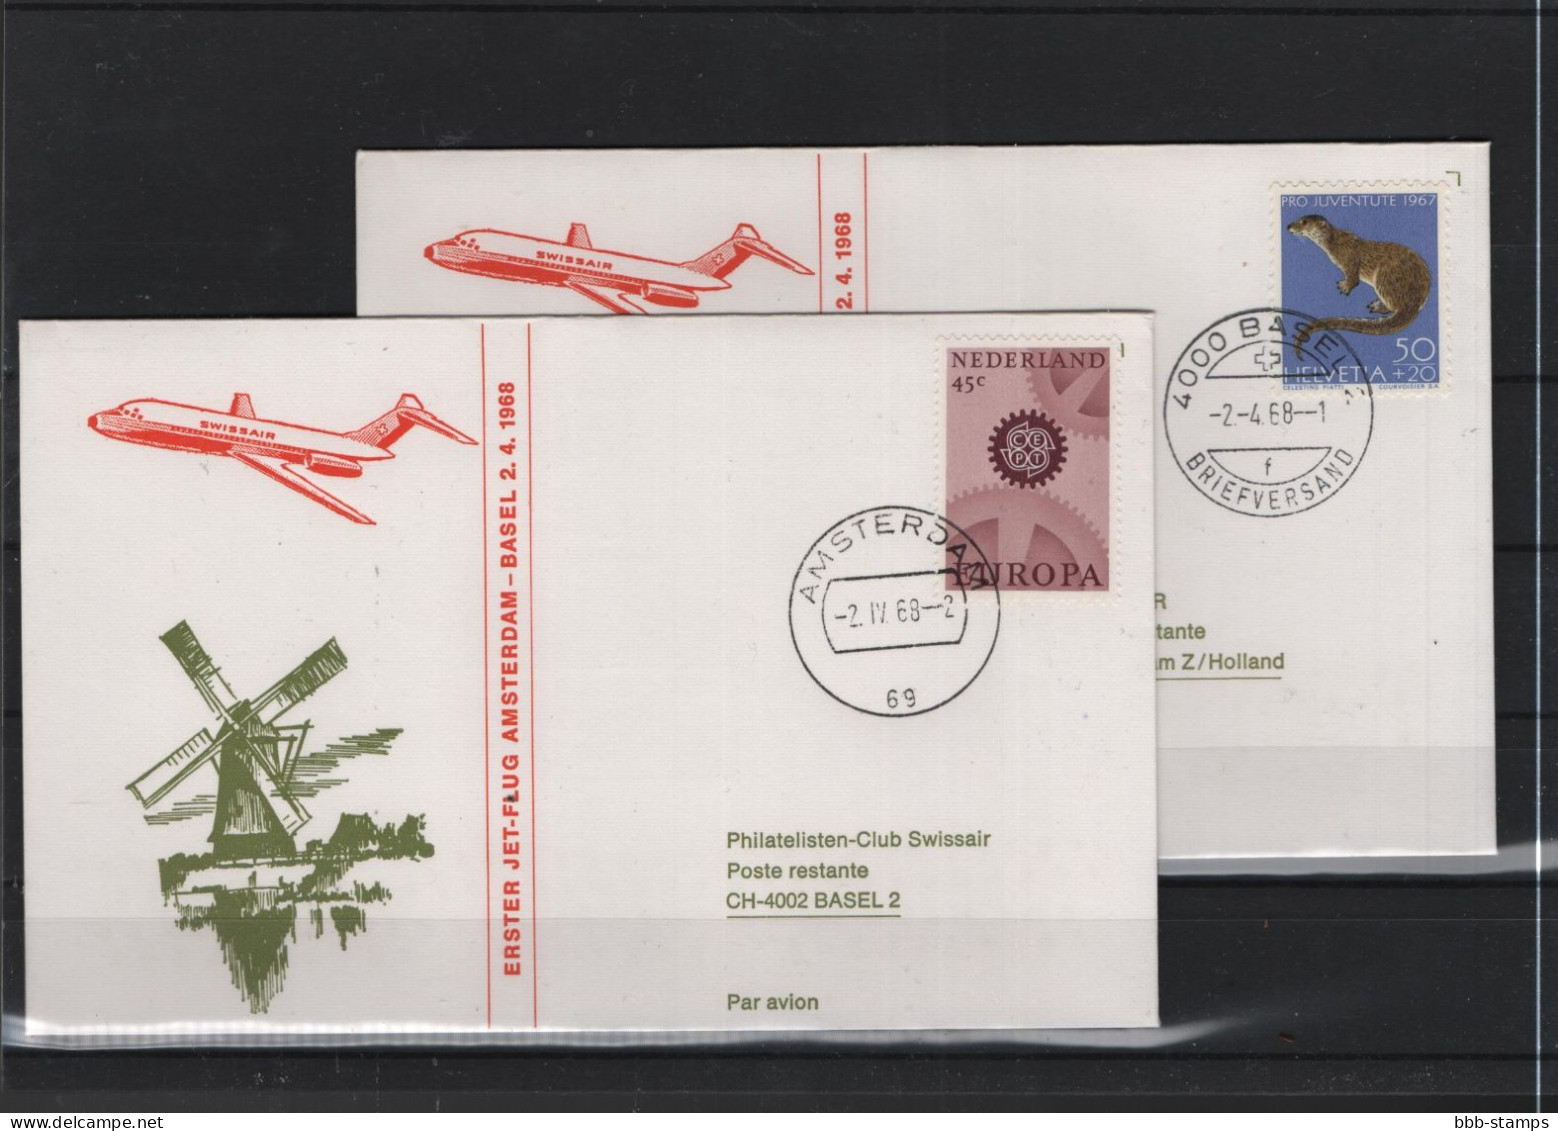 Schweiz Air Mail Swissair  FFC  2.4.1968 Basel - Amsterdam VV - First Flight Covers